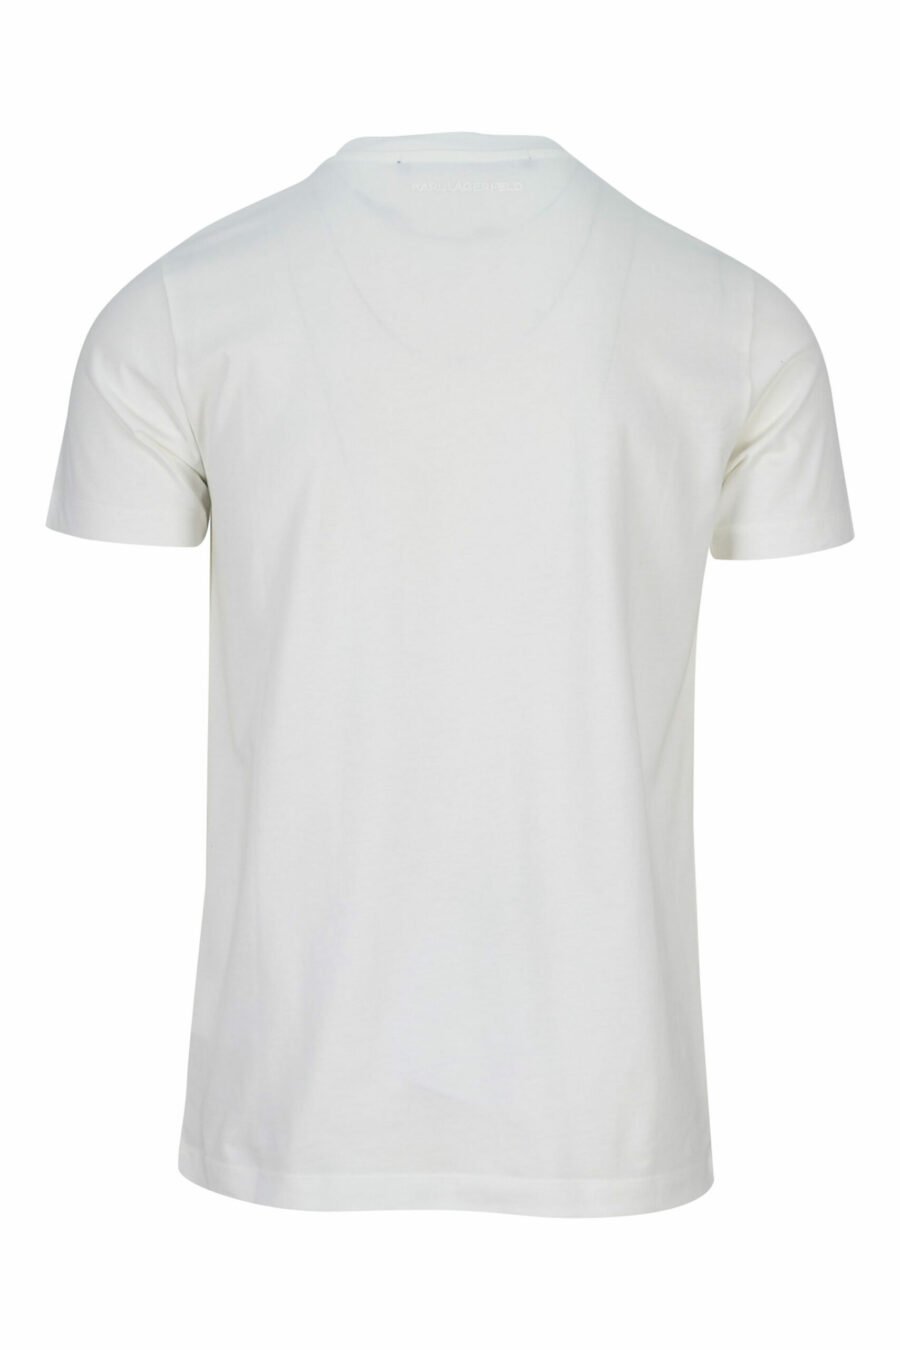 T-shirt bege com maxilogo de borracha monocromático - 4062226679404 1 scaled